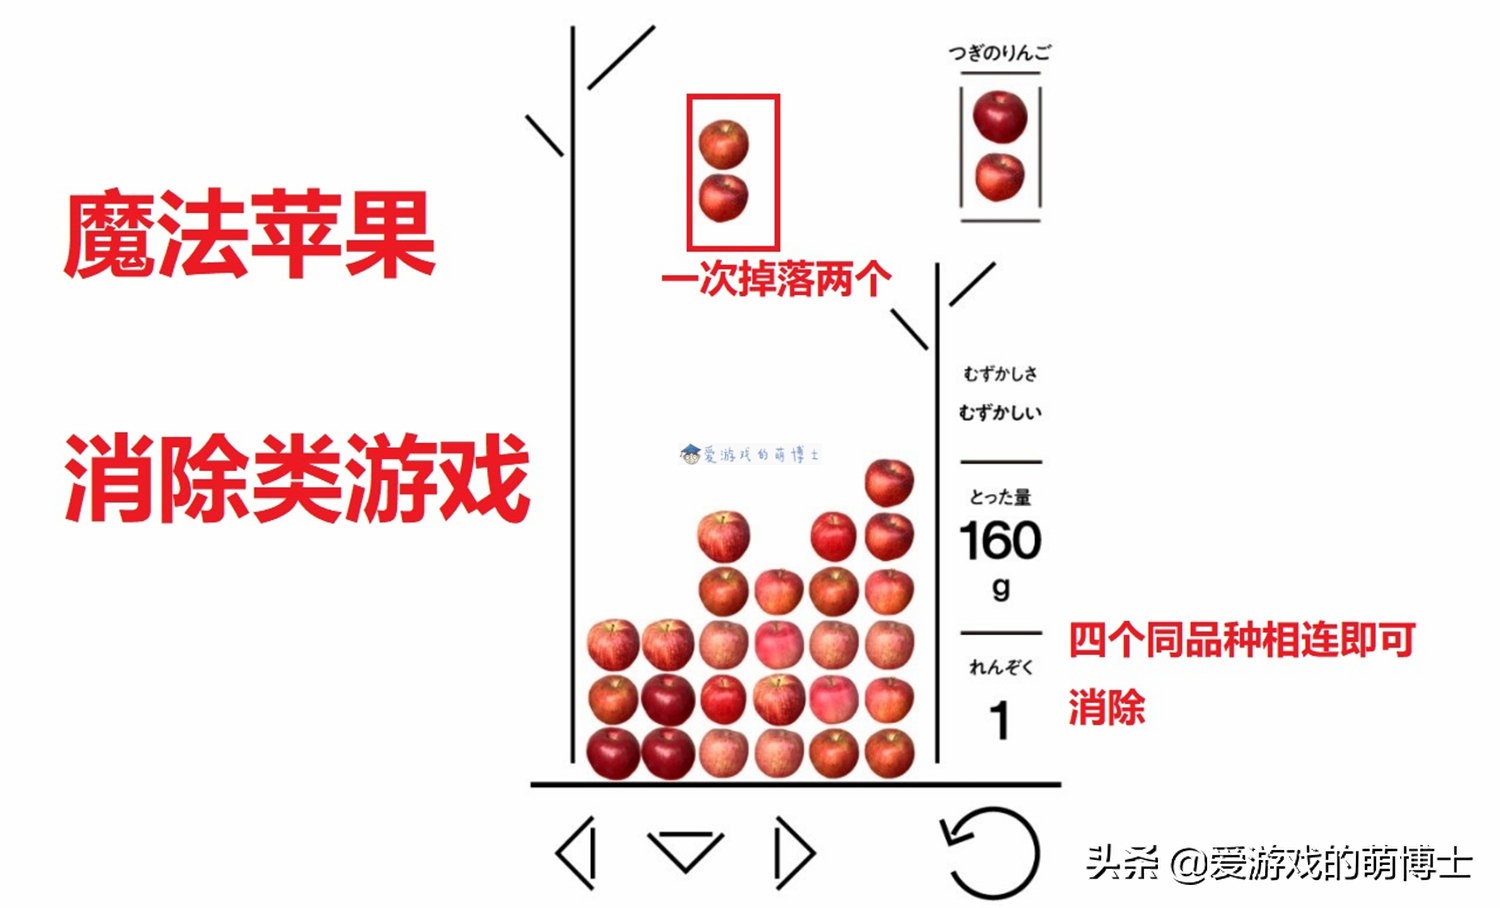 超高难度引发热议，日本青森县推出苹果版《魔法气泡》